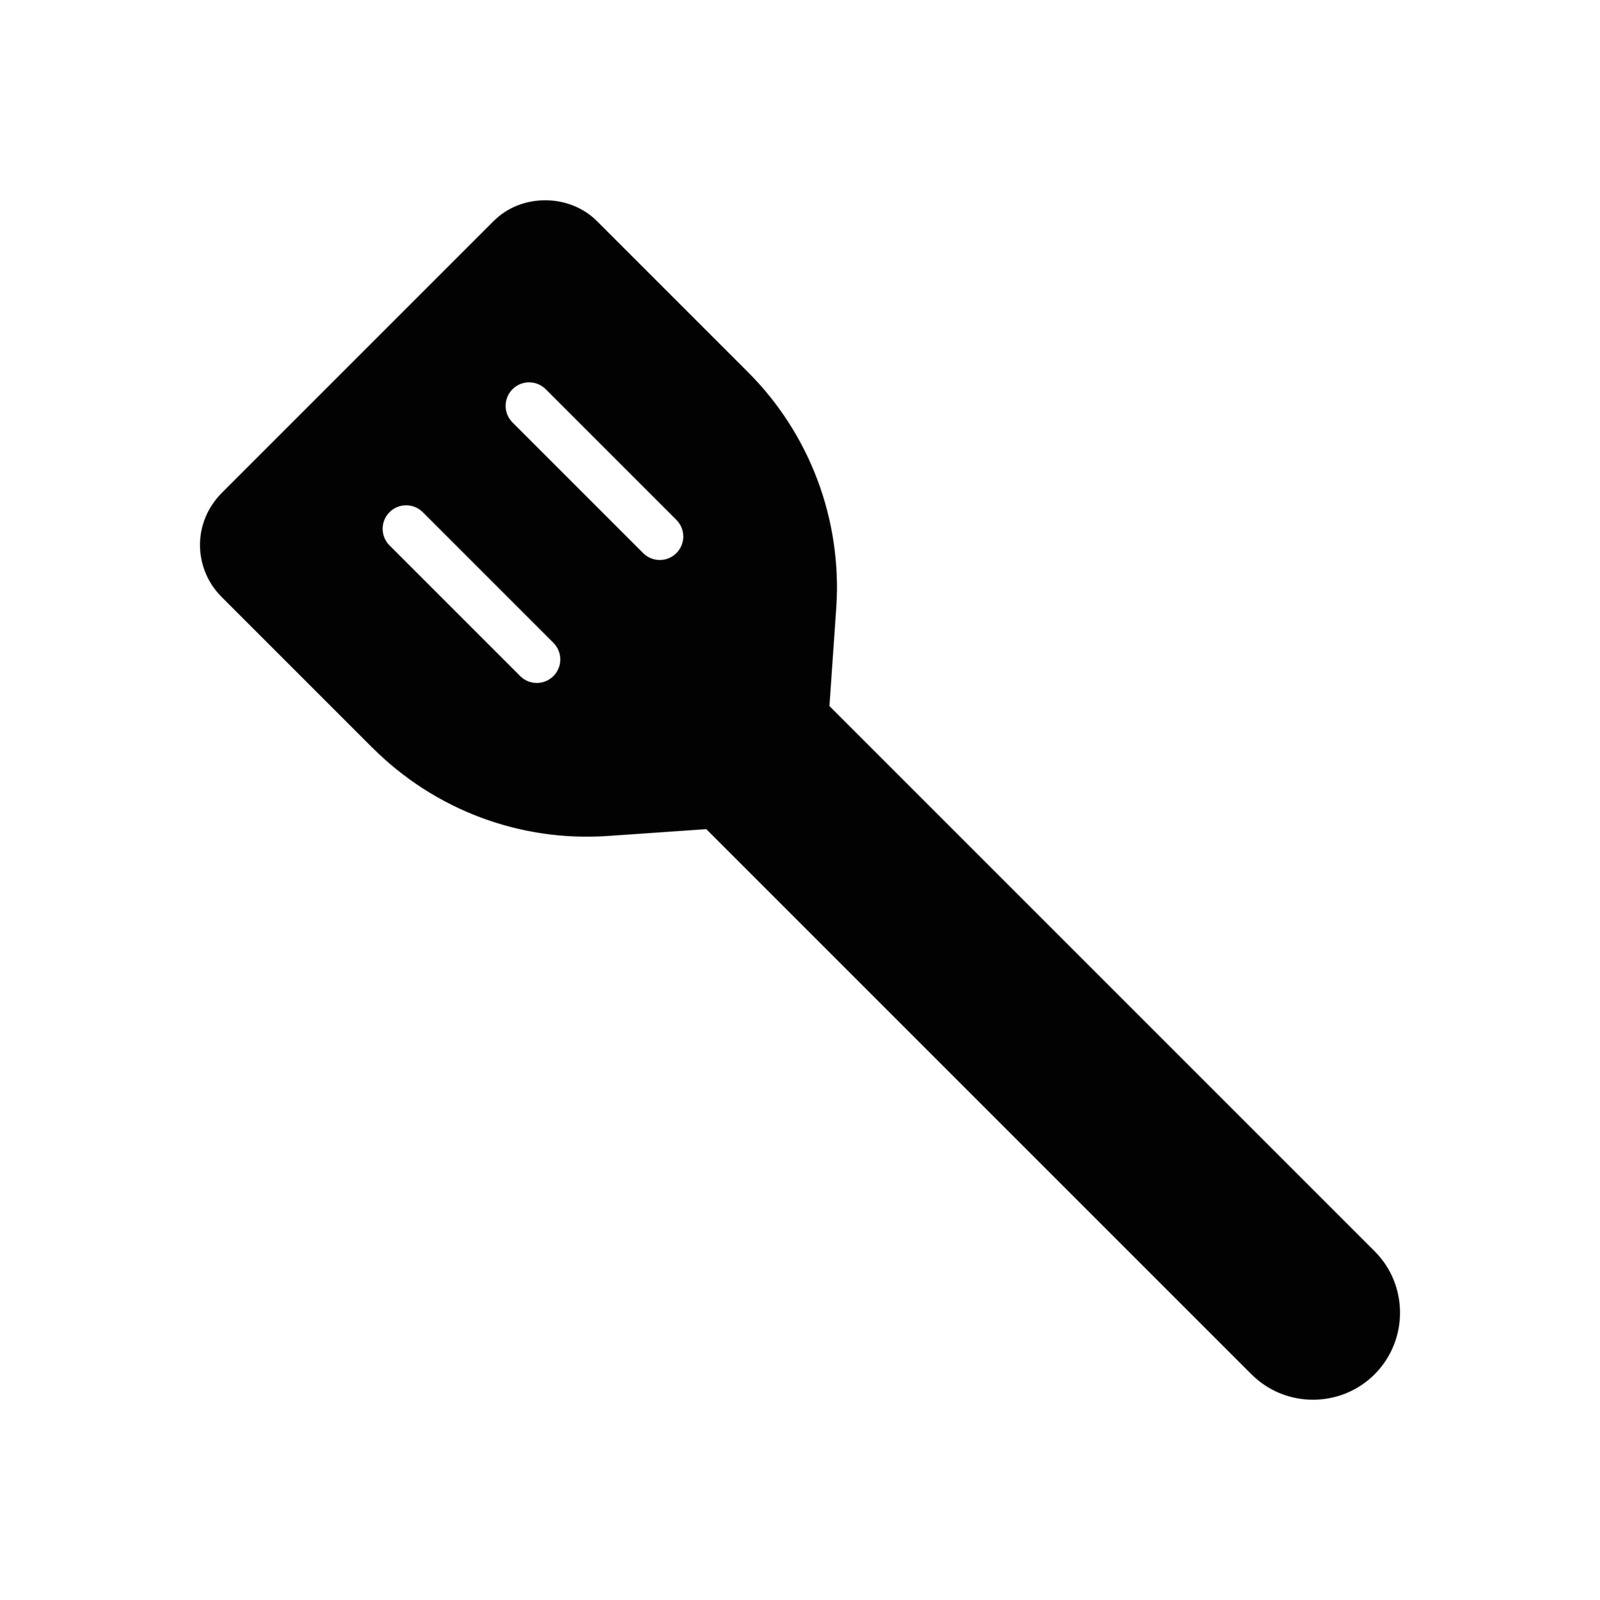 utensils by vectorstall